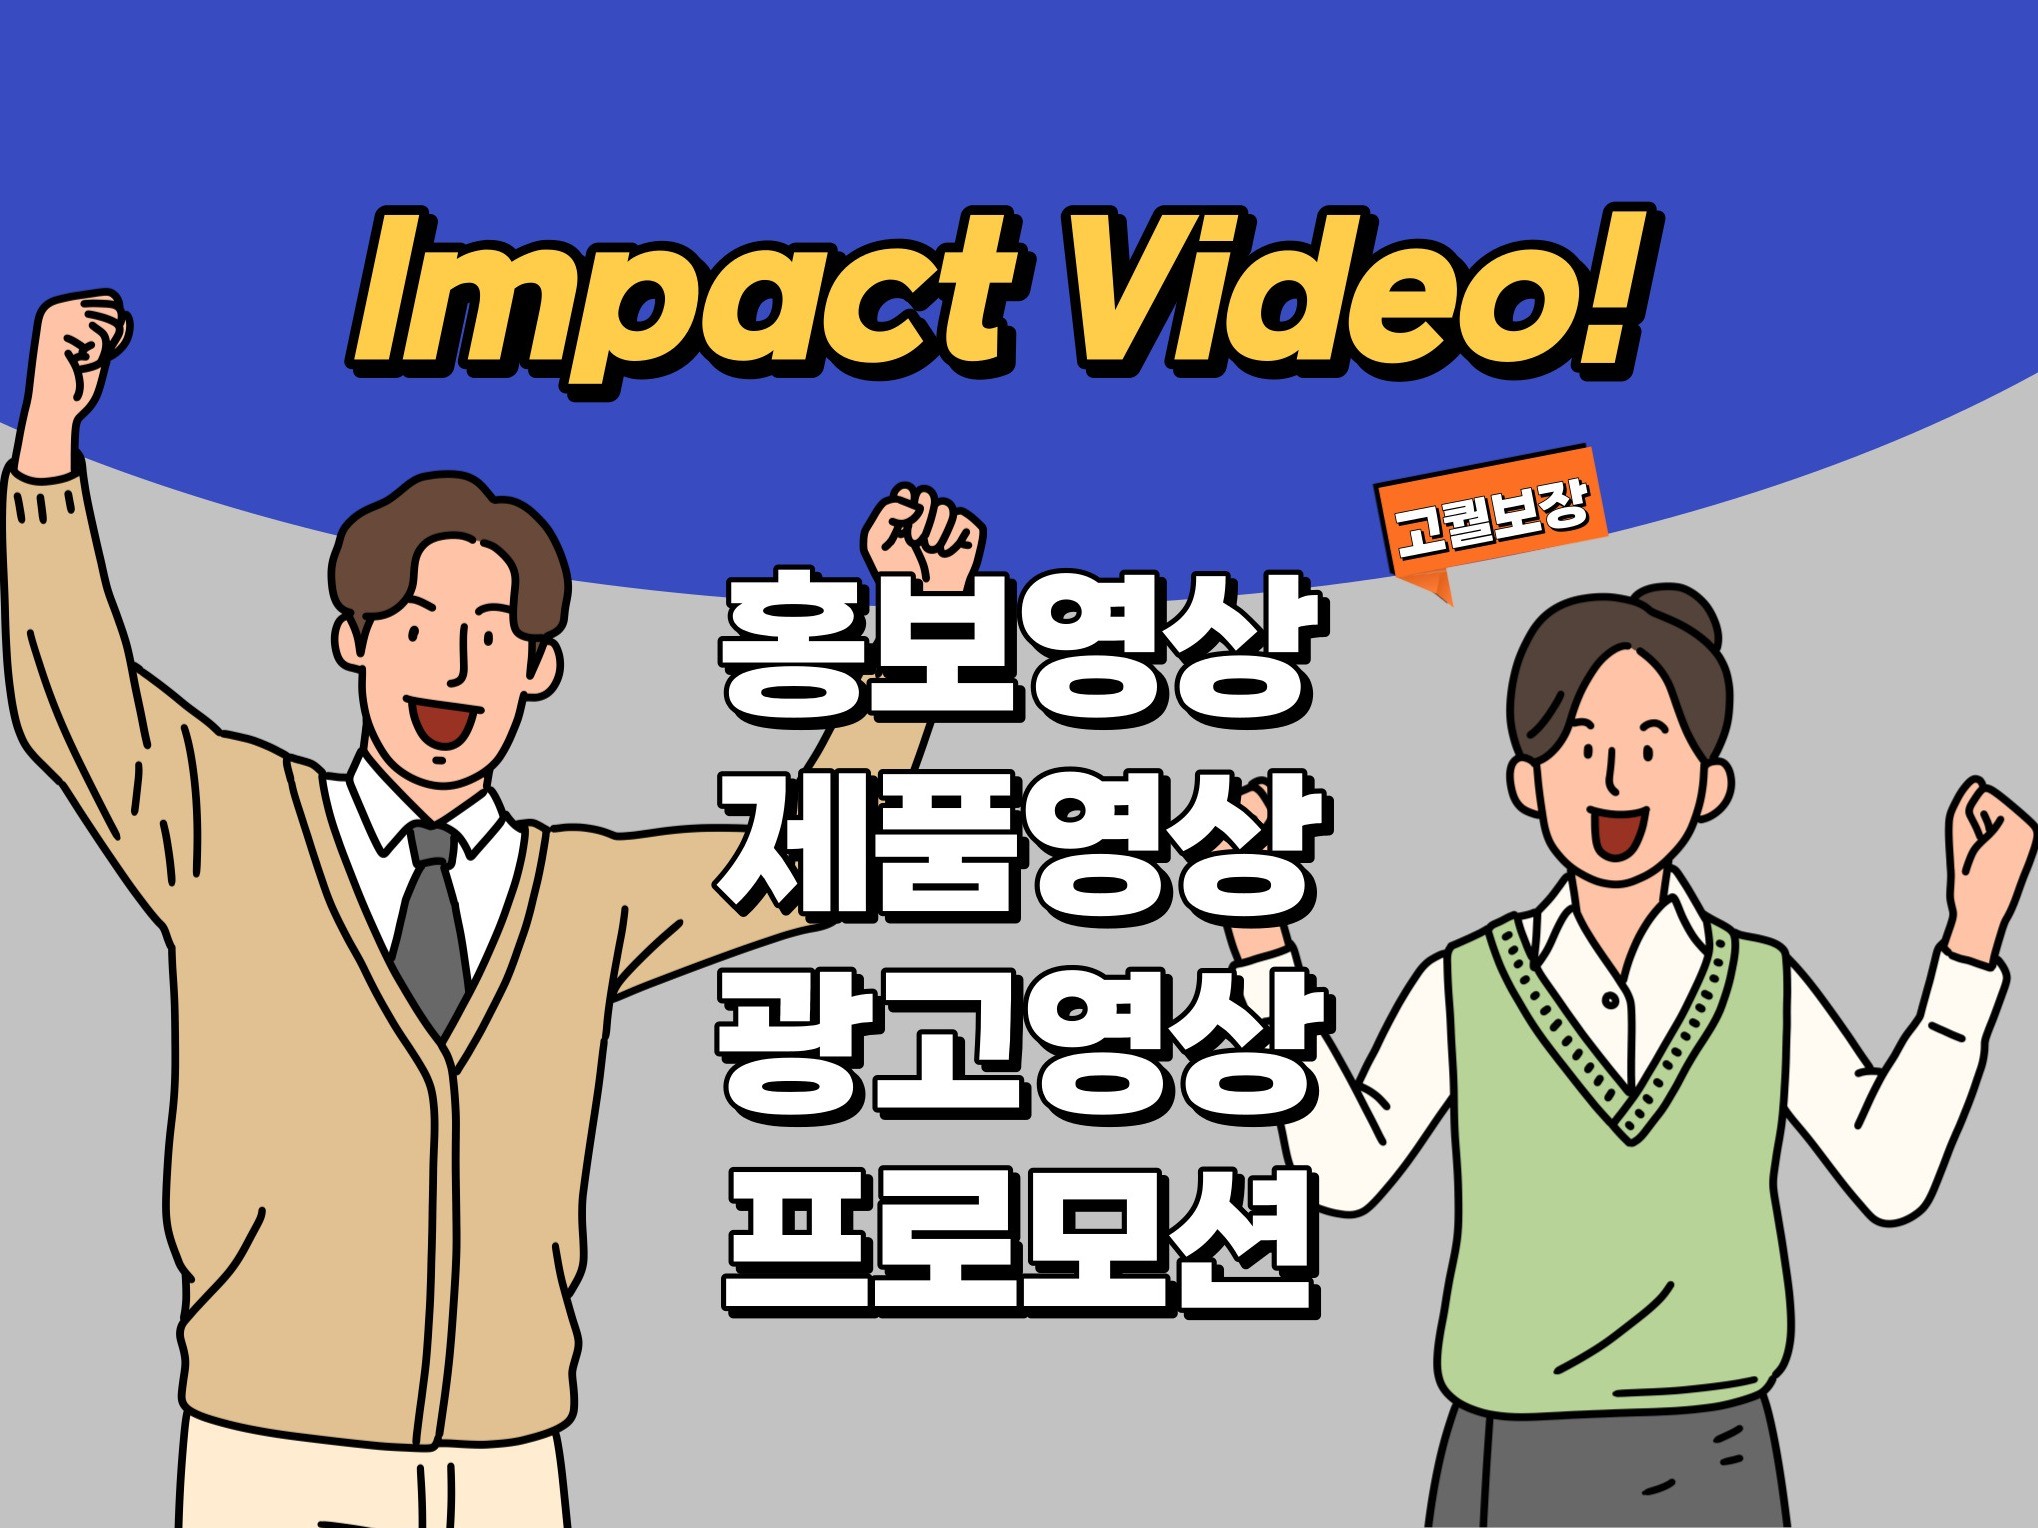 고퀄 프로모션 광고, 제품, 회사 홍보영상 제작